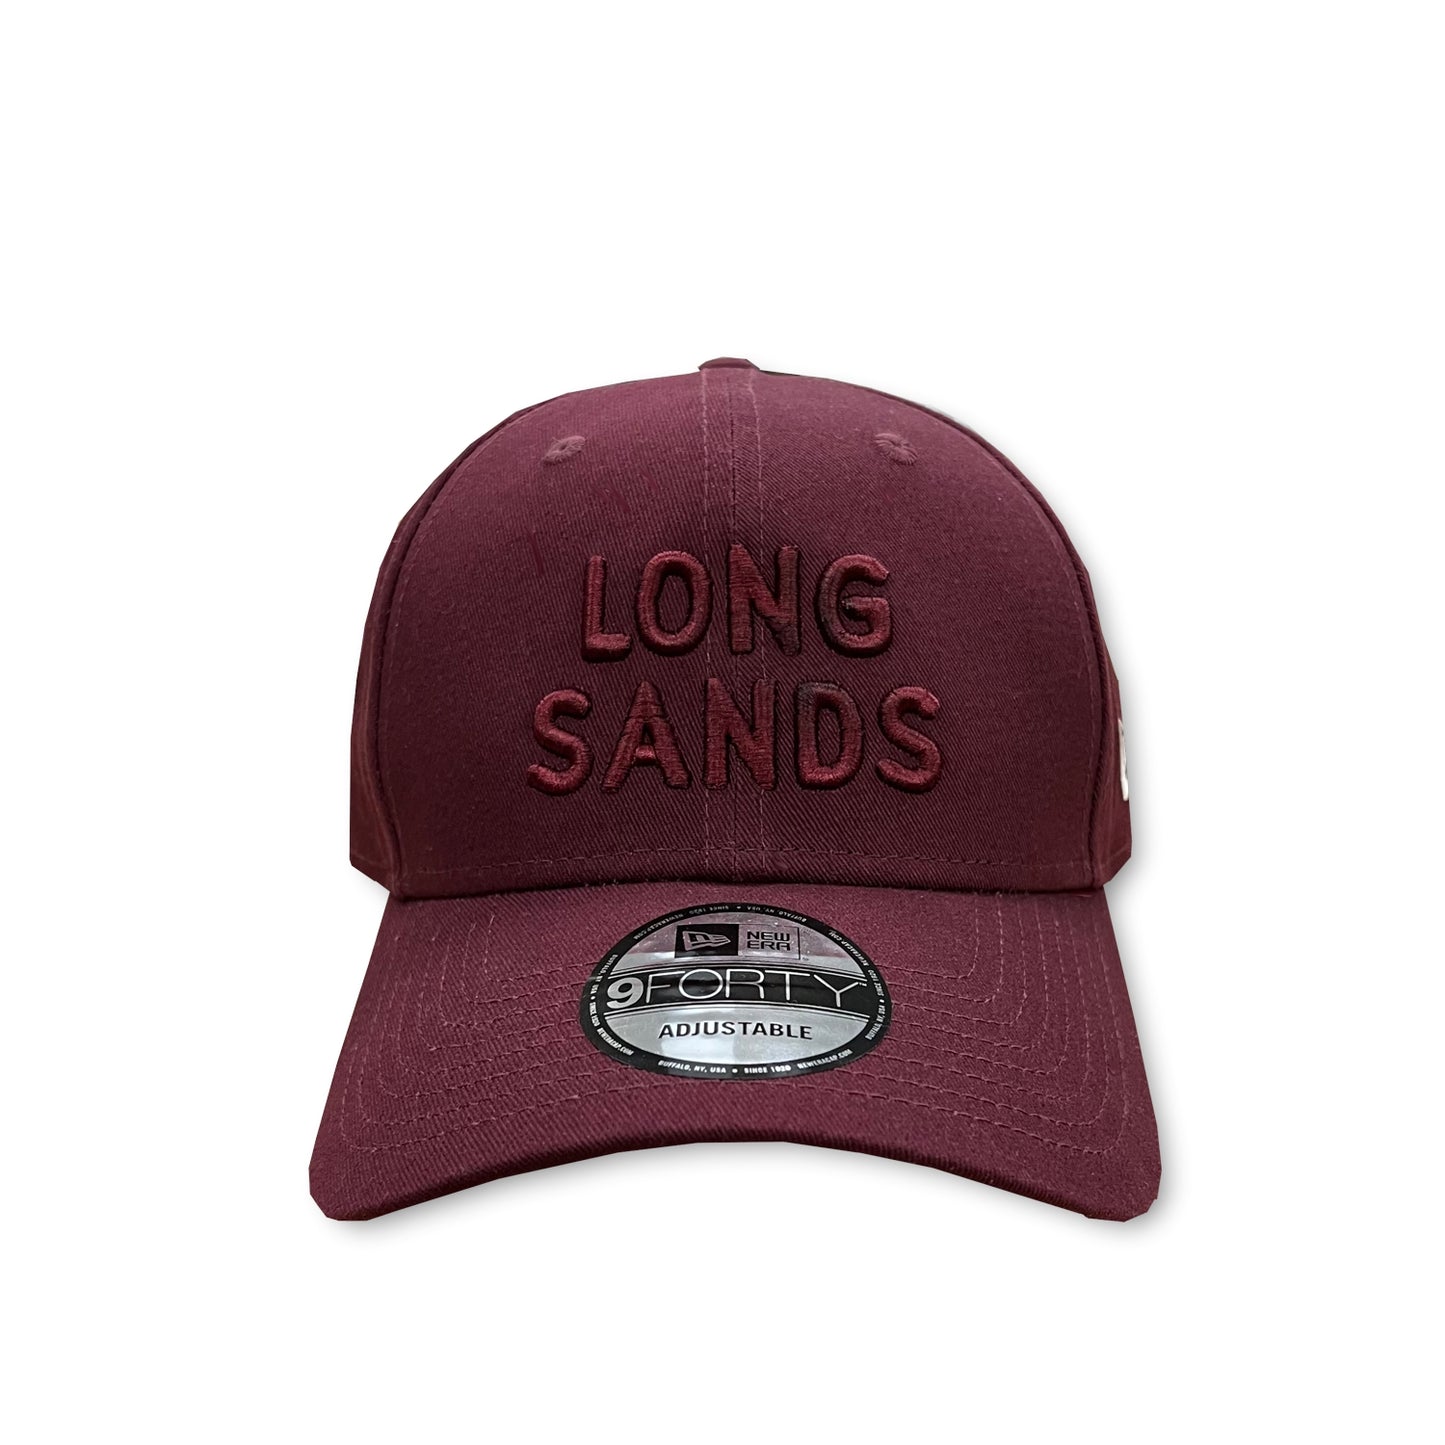 Longsands x New Era Block Cap - Maroon